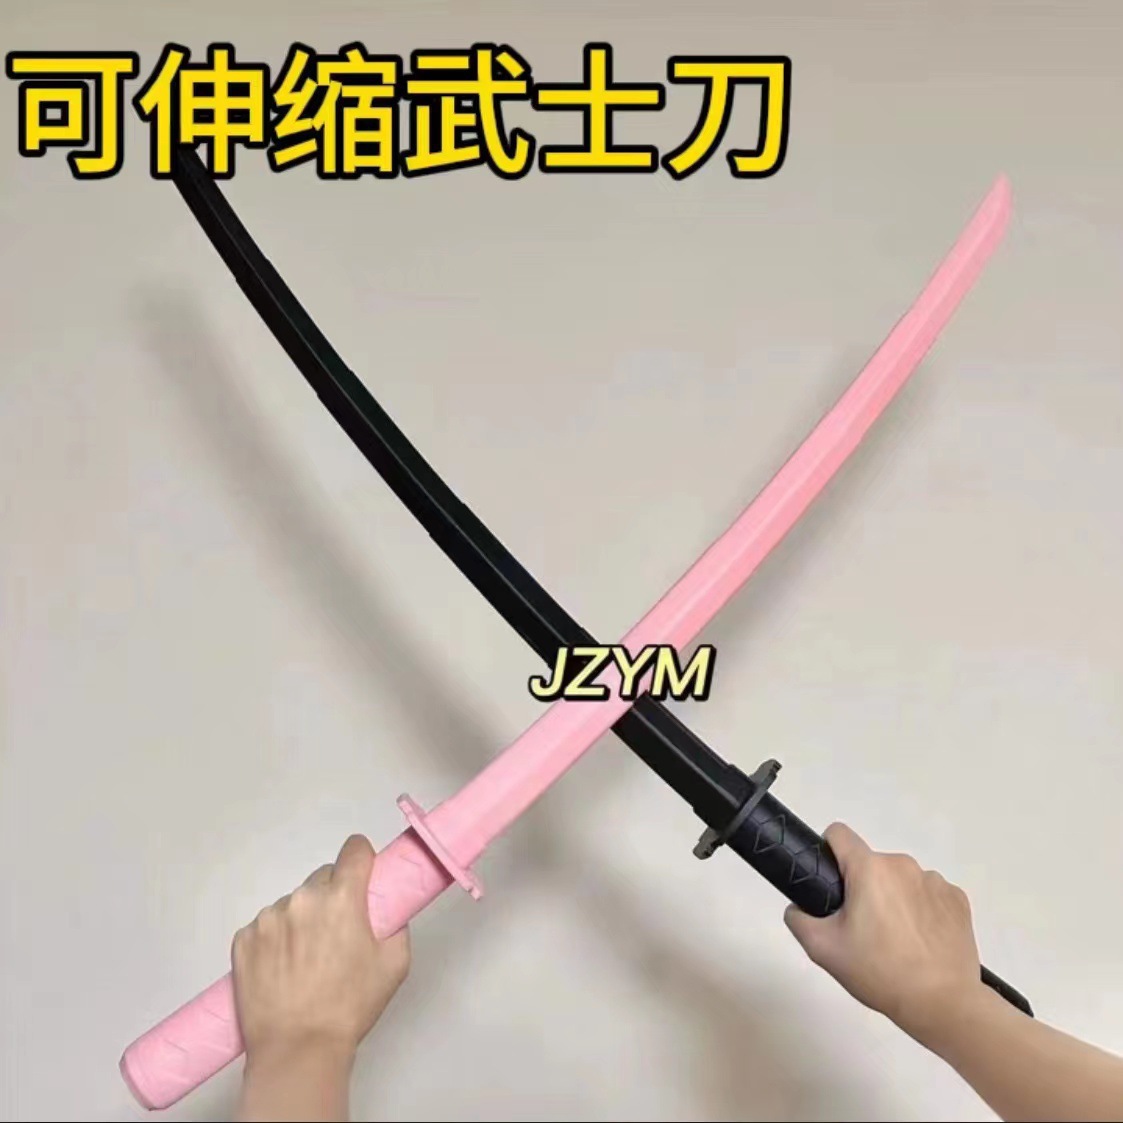 3D打印模型刀剑伸缩武士刀玩具武器道具粉红色全伸缩黑色甩刀批发